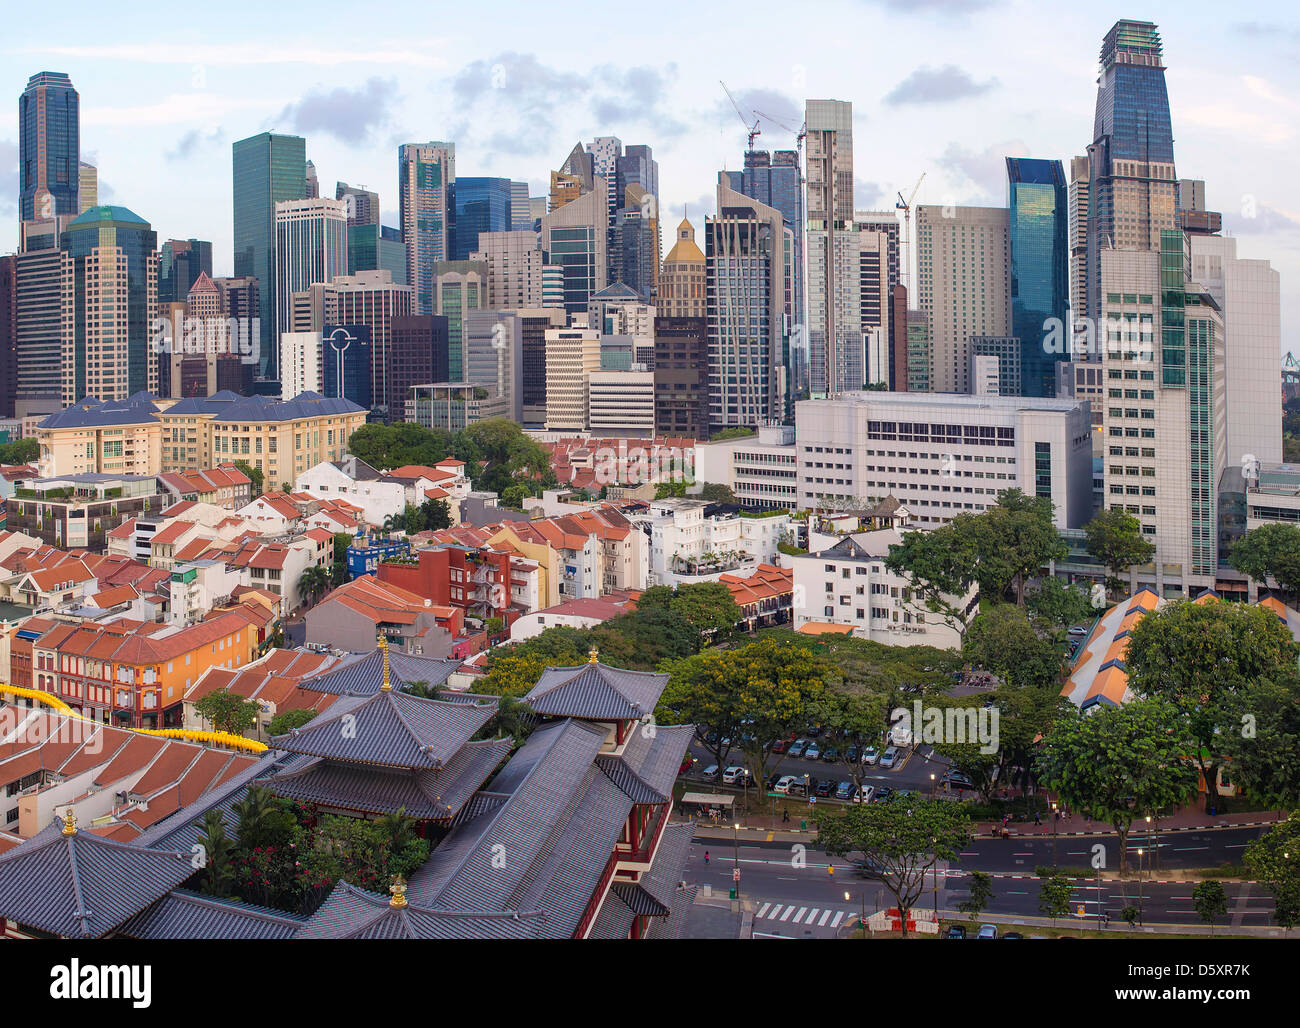 Singapore City Central Business District (CBD) sur Chinatown avec de vieilles maisons et temples chinois Banque D'Images